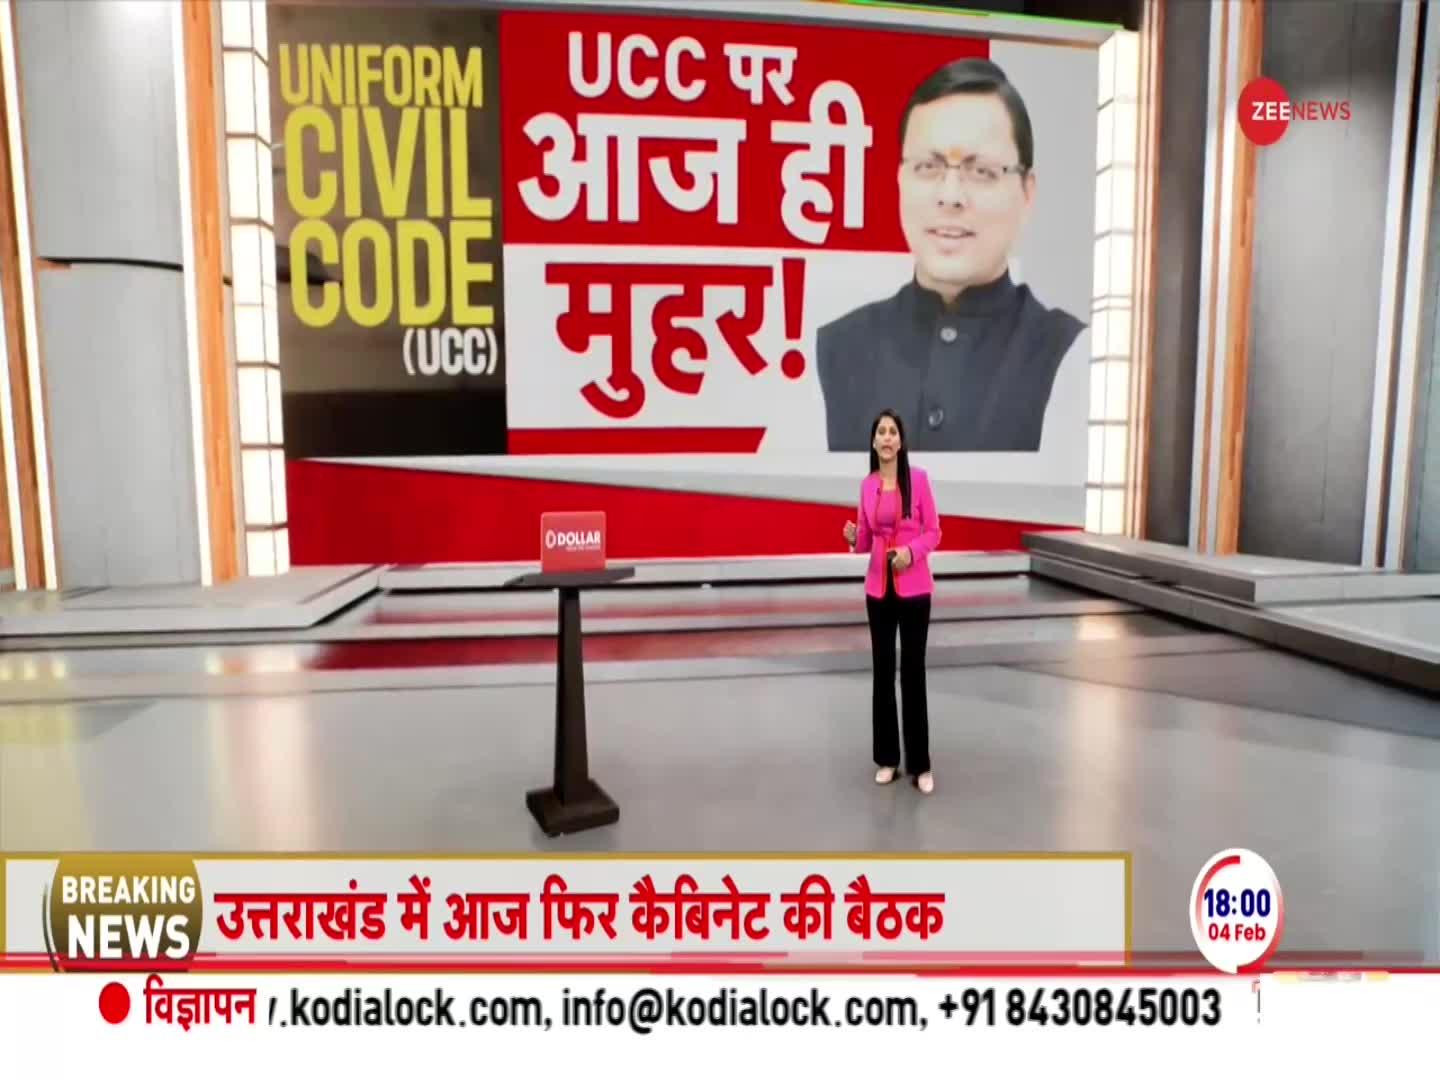 Uttarakhand UCC News: उत्तराखंड के UCC ड्राफ़्ट में क्या है? | Deshhit